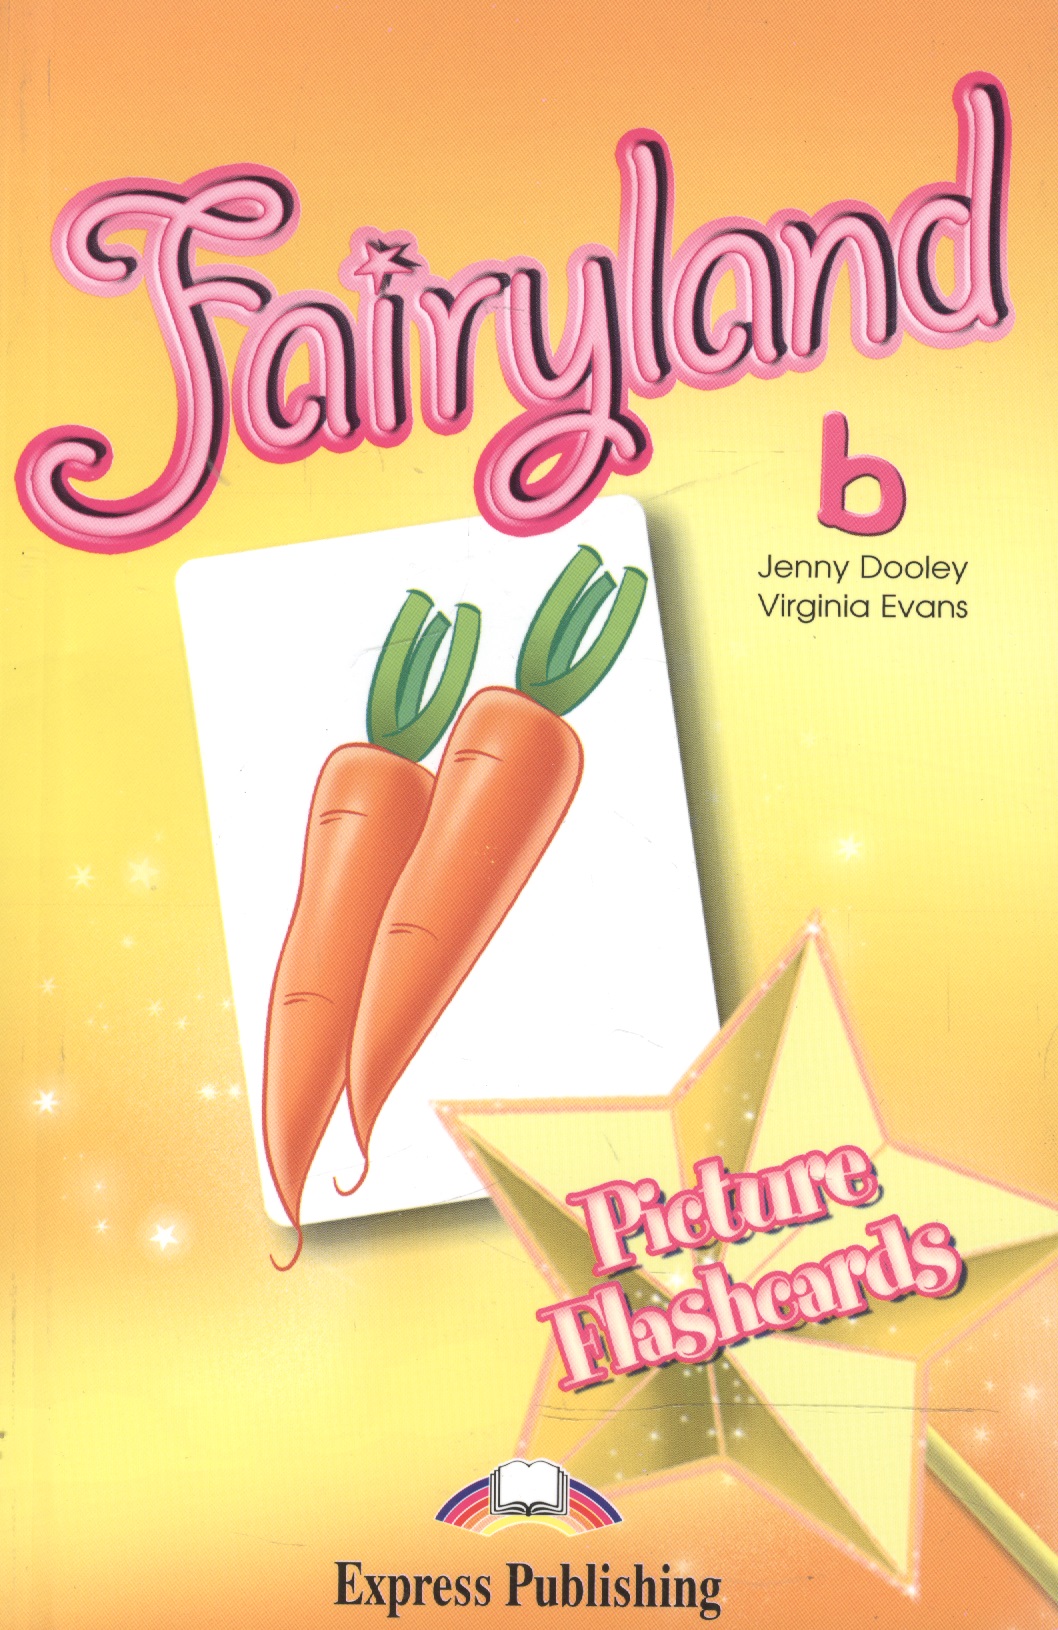 Эванс Вирджиния Fairyland 2. Picture Flashcards. Beginner. Раздаточный материал 123 flashcards